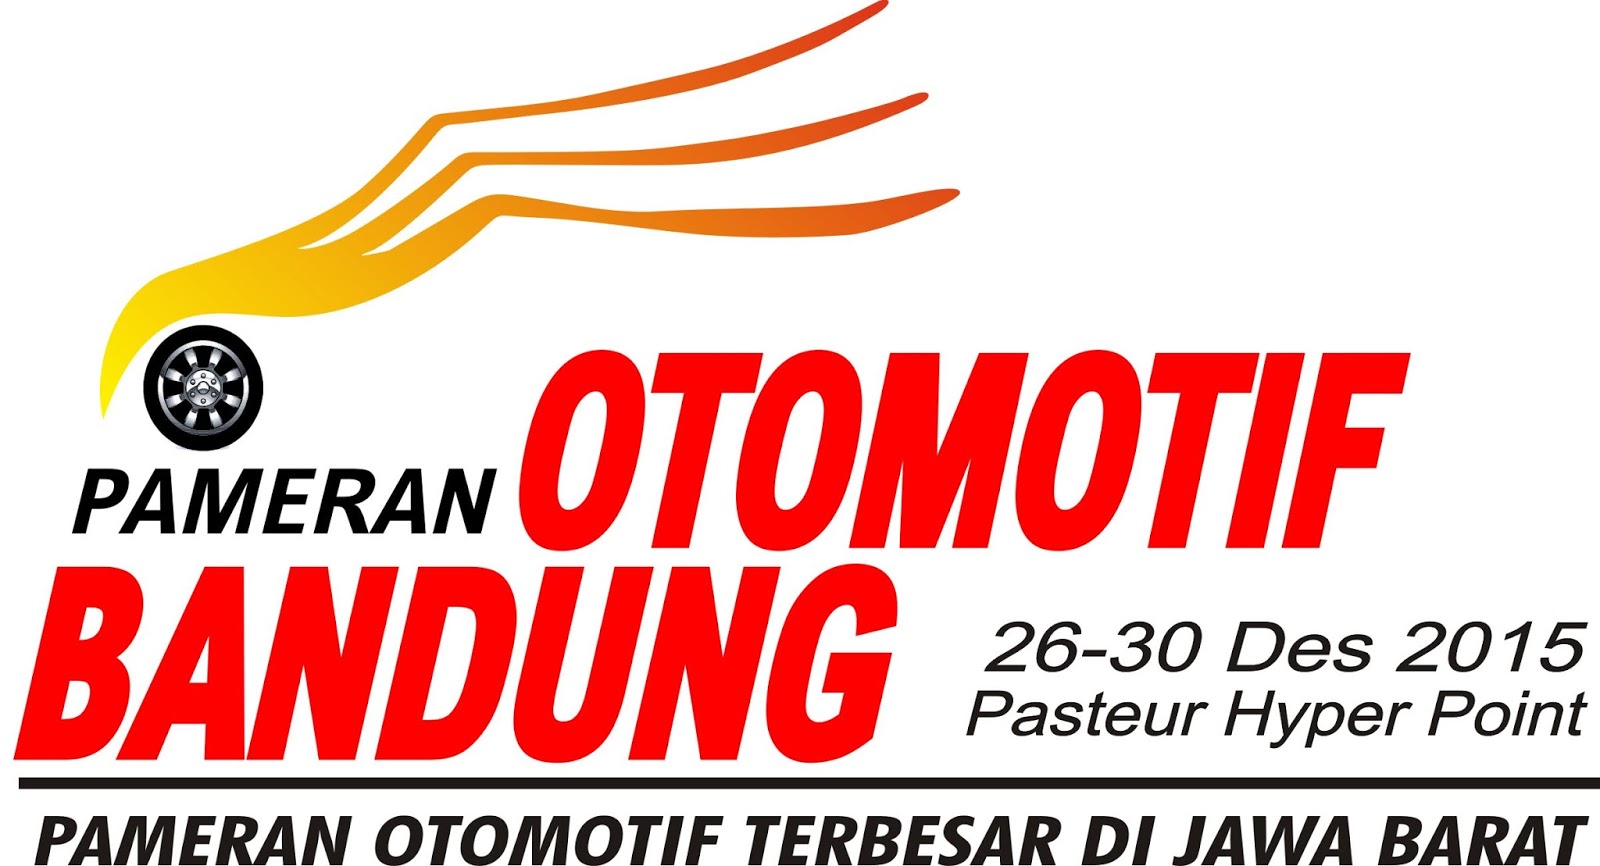 Bandung Otomotif Expo 2015, 26-30 Desember 2015